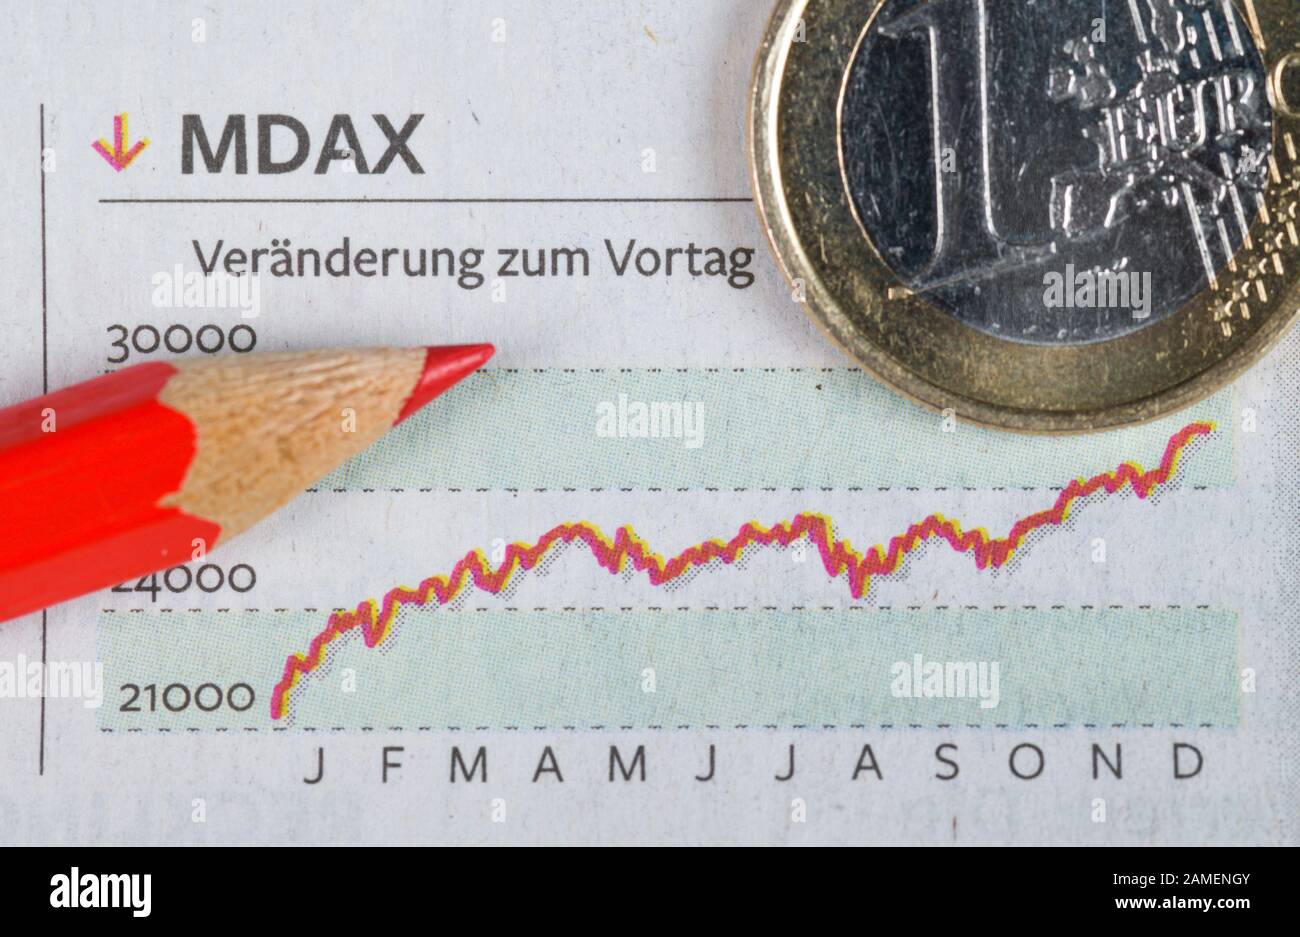 Zeitung, Börsenteil, MDAX Stock Photo